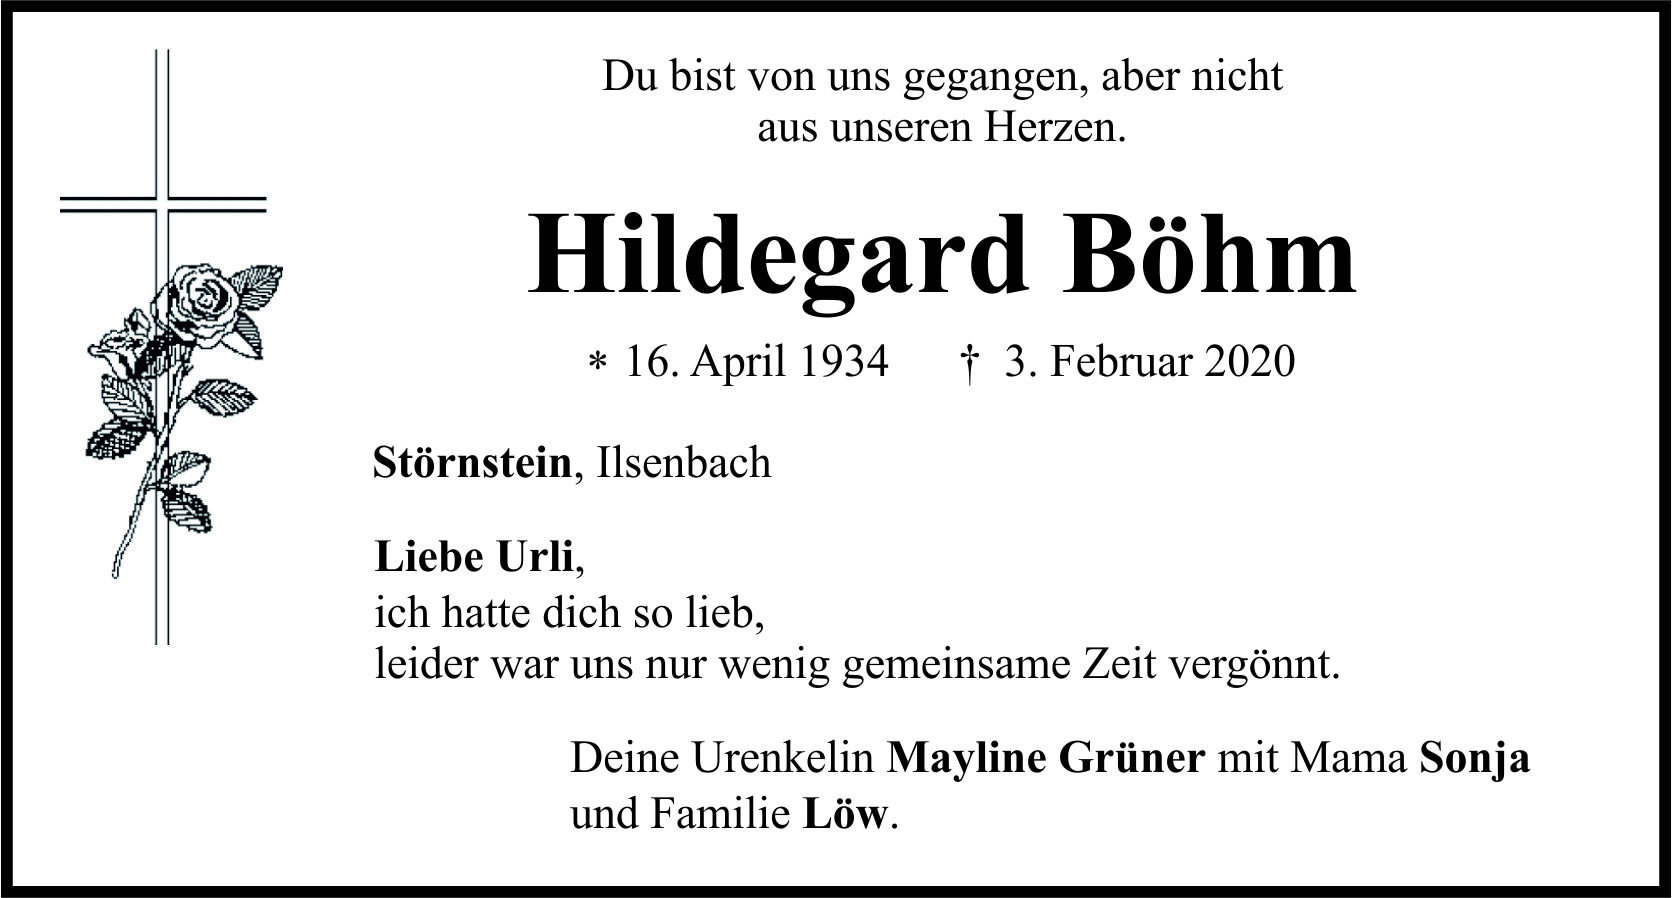 Traueranzeige Hildegard Böhm, Störnstein